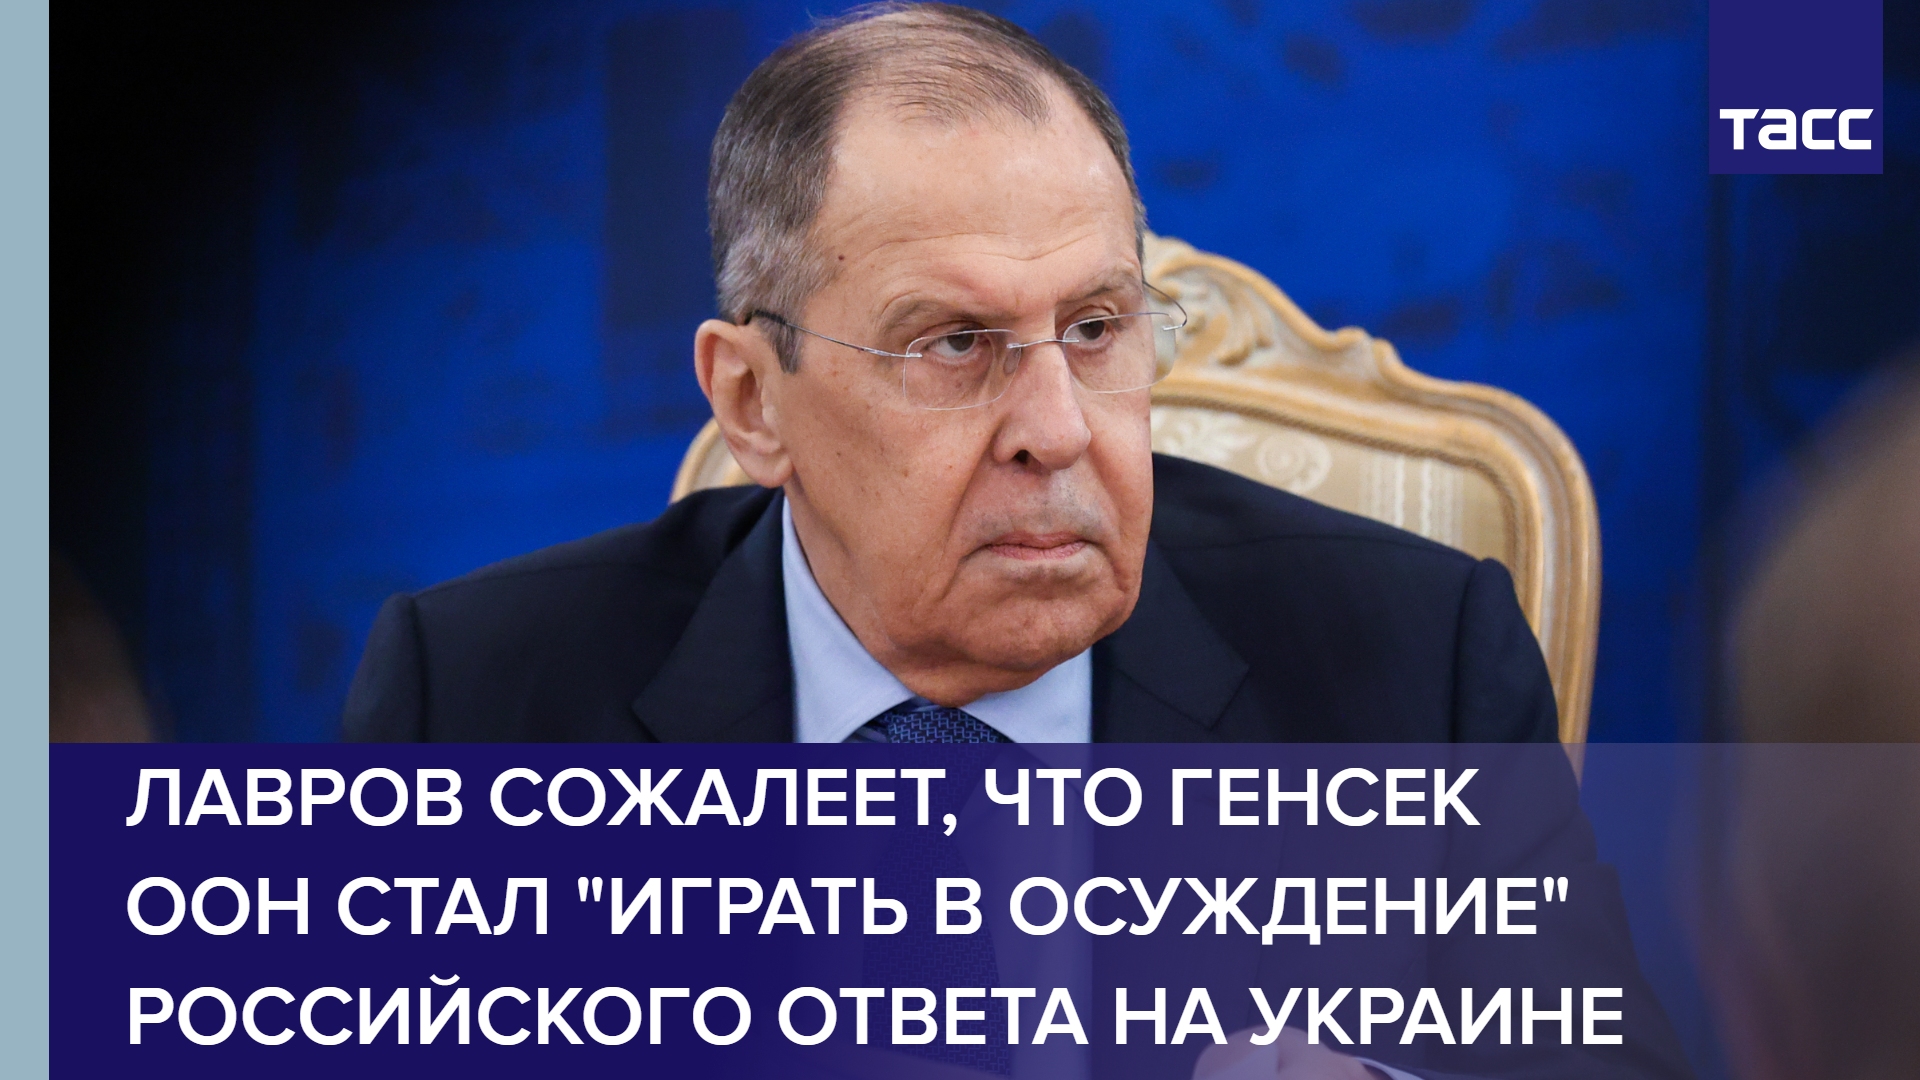 Лавров сожалеет, что генсек ООН стал "играть в осуждение" российского ответа на Украине